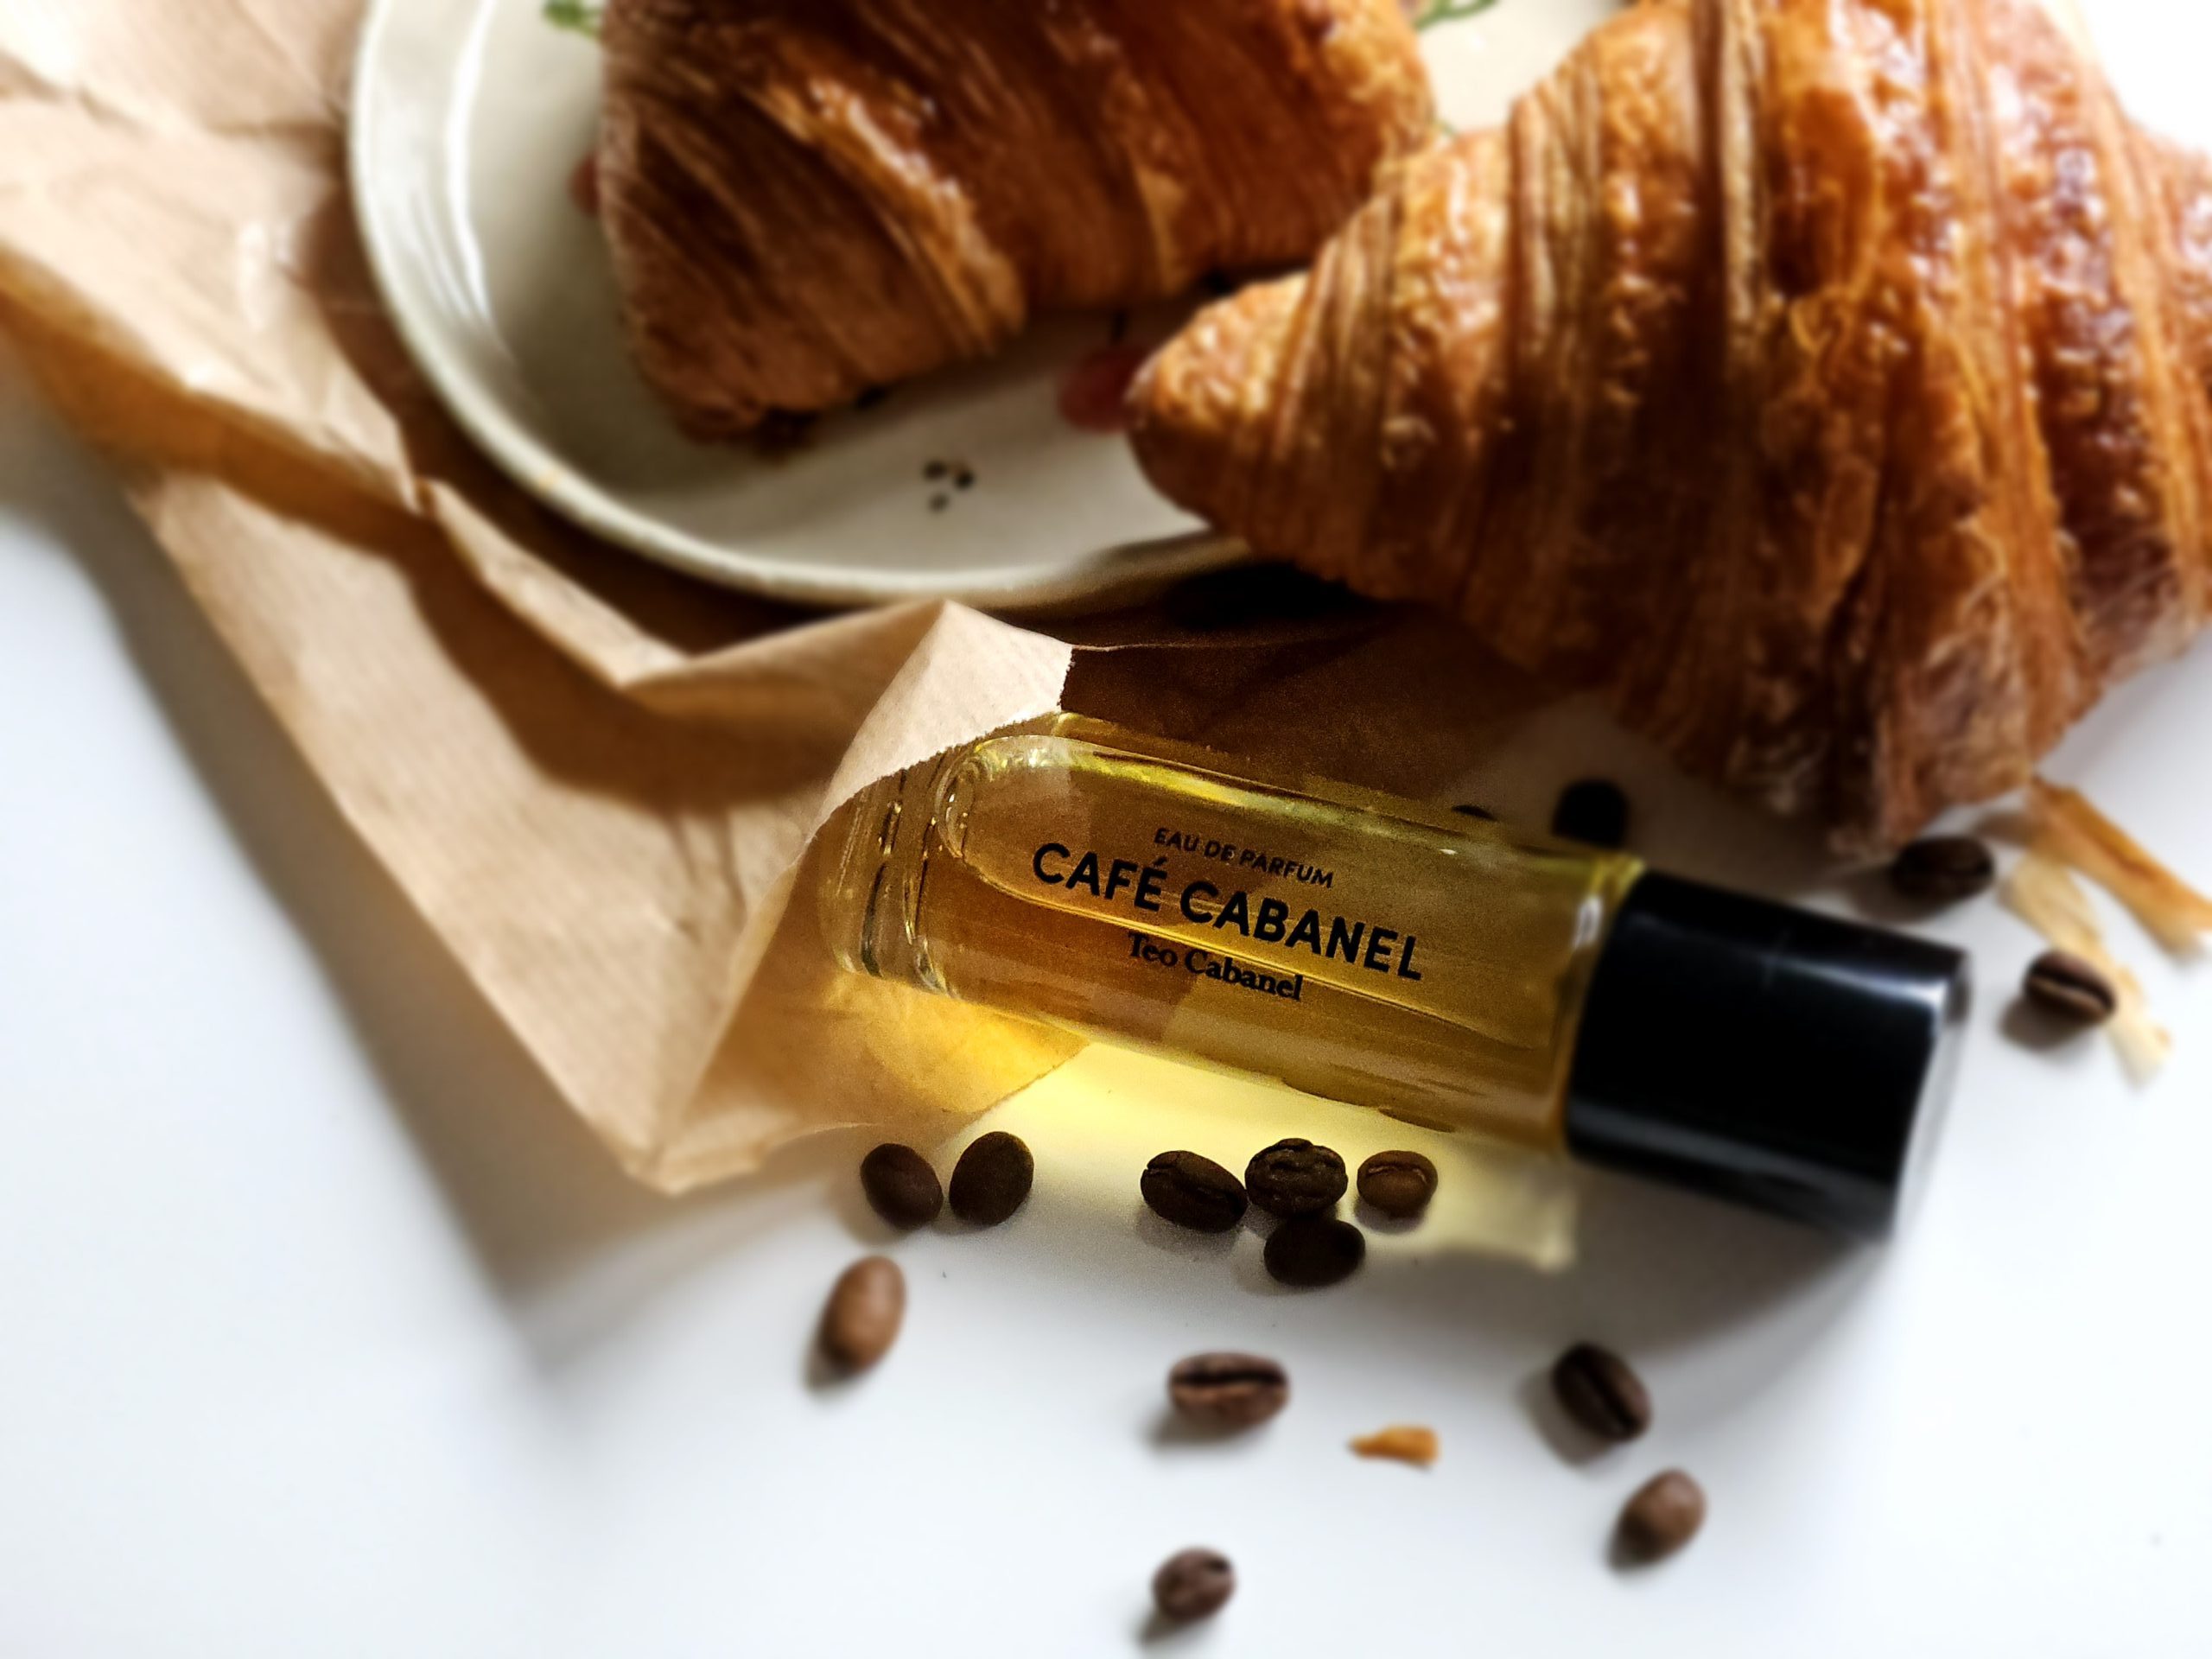 Teo Cabanel Café Cabanel - perfumy o zapachu francuskiej kawiarni